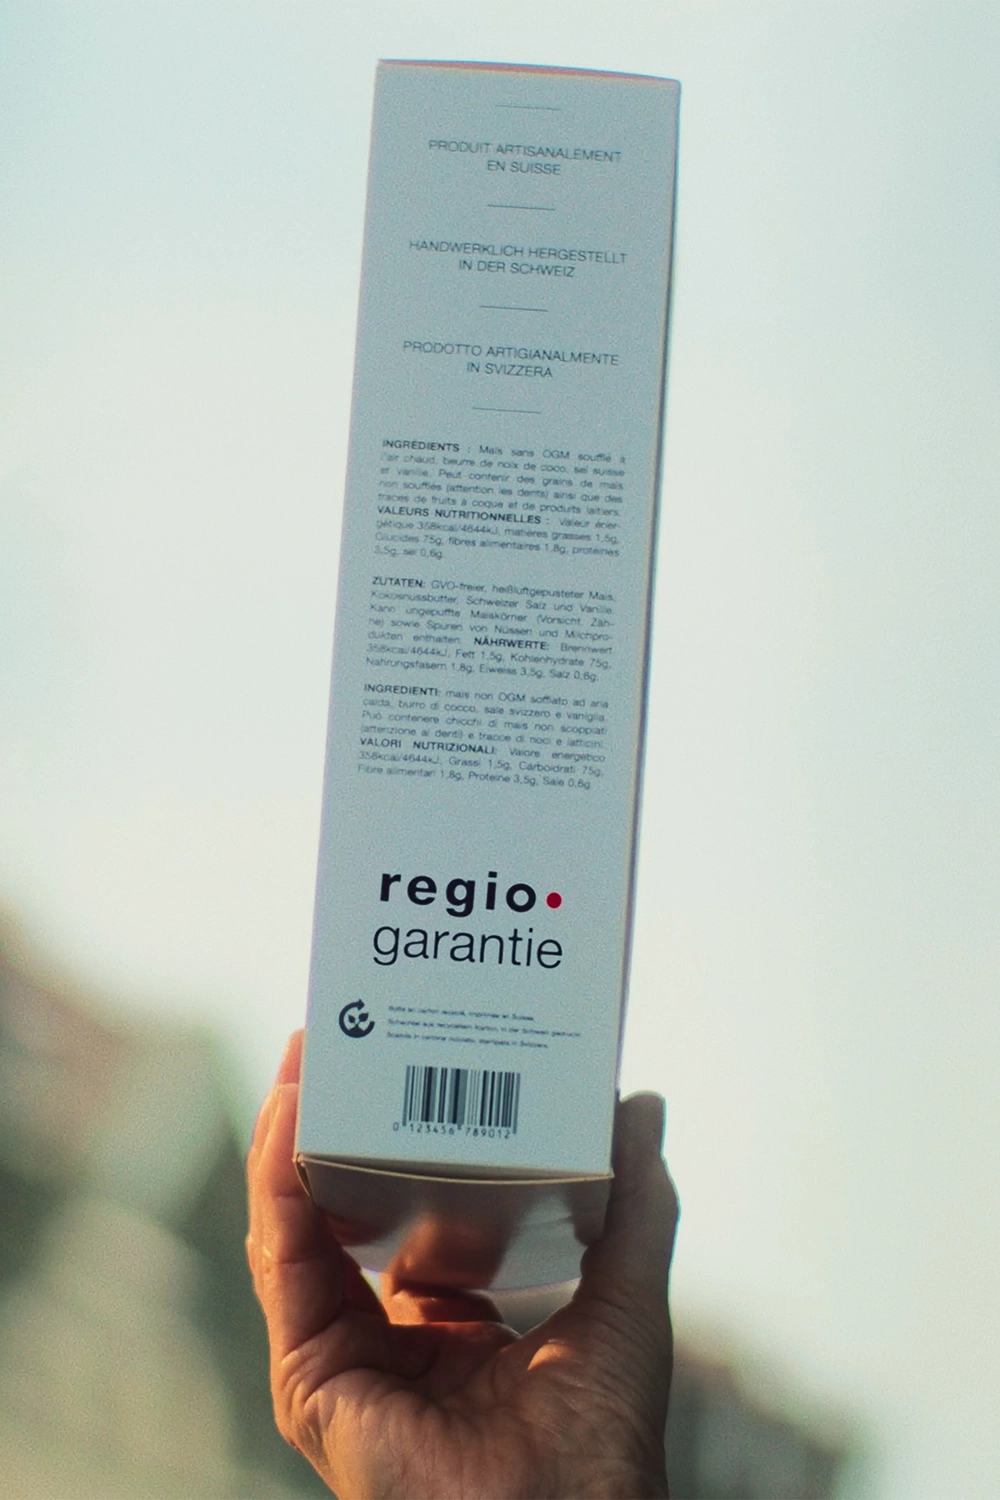 Emballage en carton avec le label regio.garantie